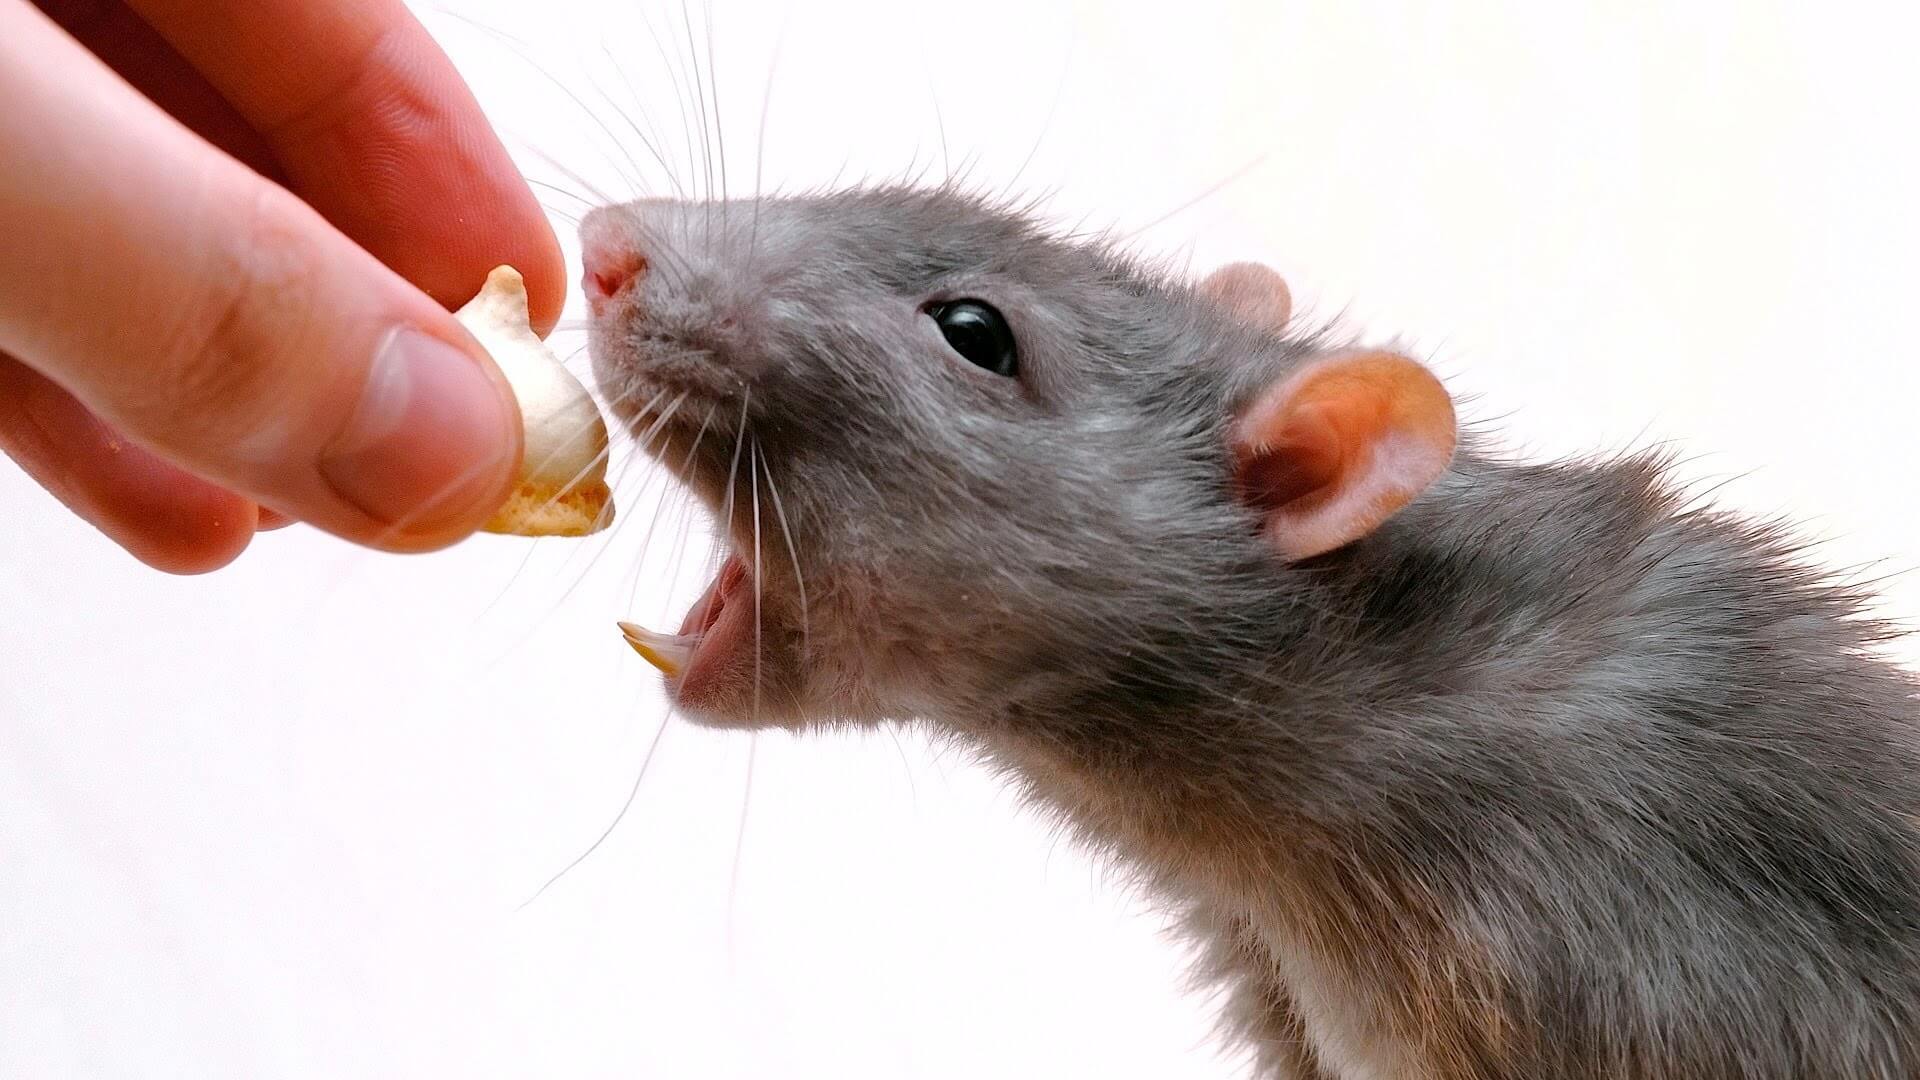 Моноклональные антитела помогли вырастить у мышей недостающие зубы